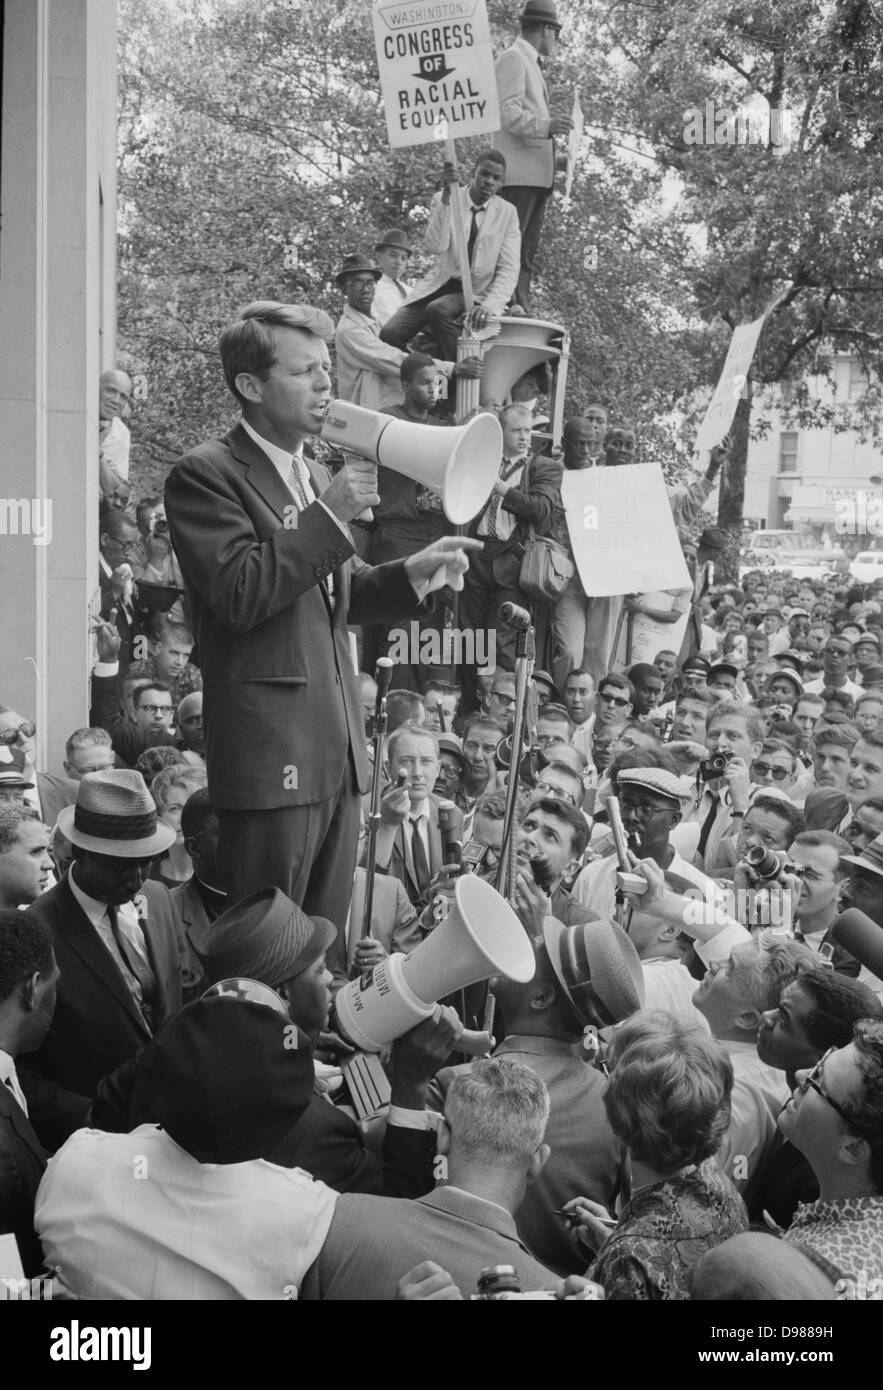 Foto, Attorney General Robert F Kennedy sprach mit einer Masse von afrikanische Amerikaner und Weiß durch ein Megaphon außerhalb der Justiz; Zeichen für Kongress der Gleichheit der Rassen wird gut sichtbar angezeigt. 1963 Juni 14. Fotograf: Warren K Leffler. Stockfoto